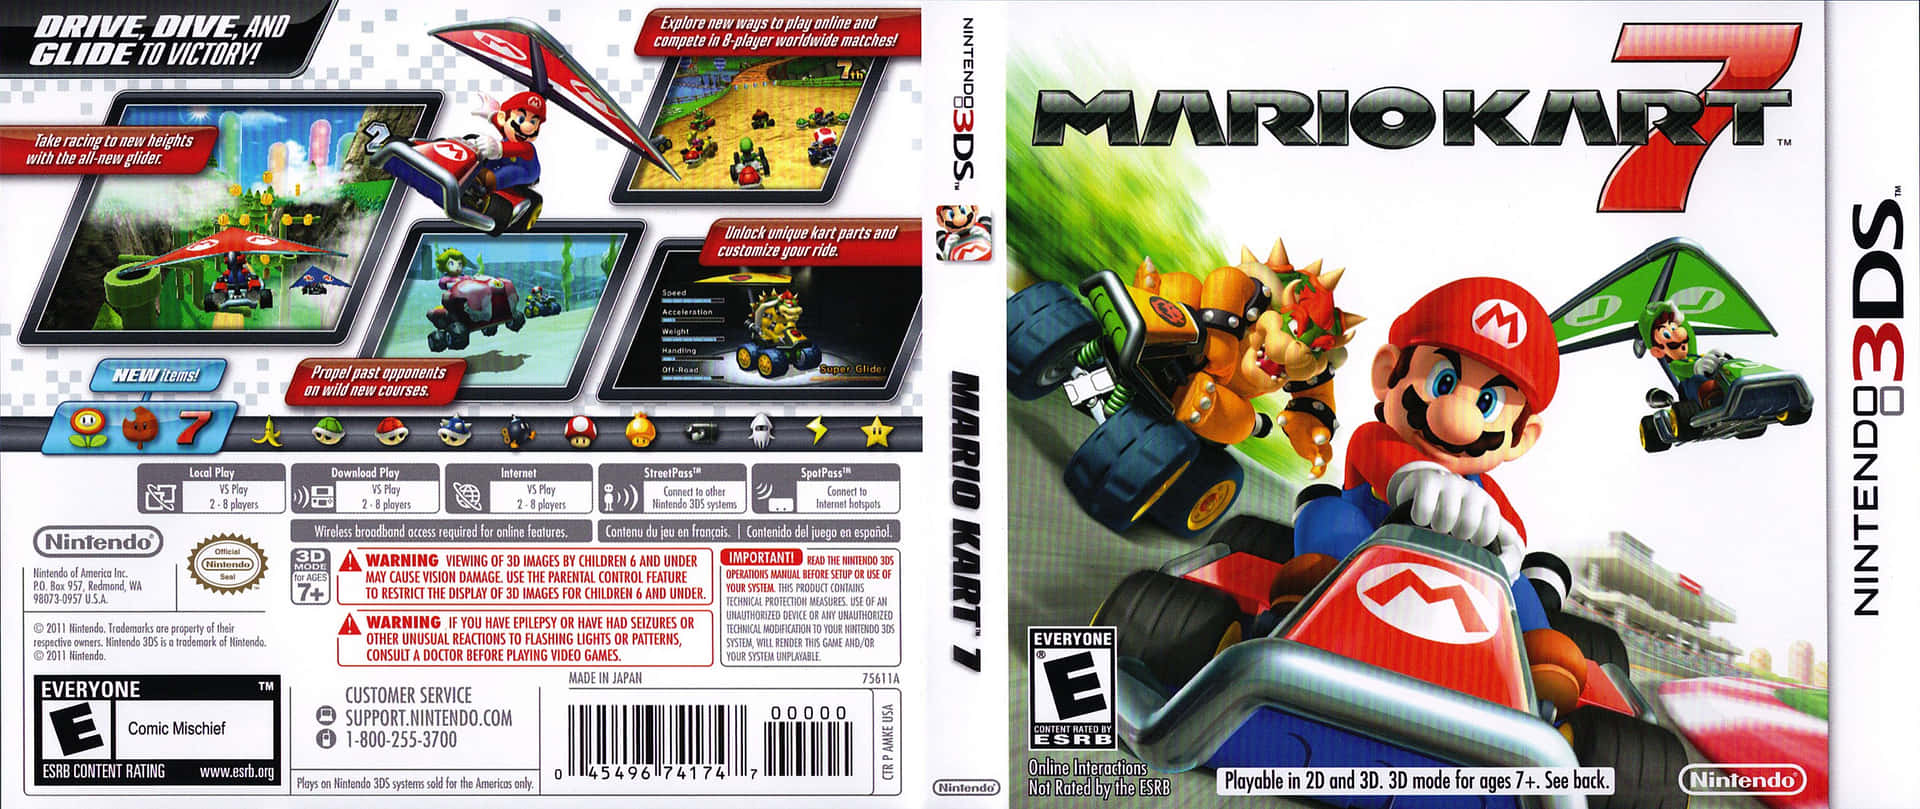 Necesitarástoda La Práctica Que Puedas Conseguir Antes De Competir En Mario Kart.